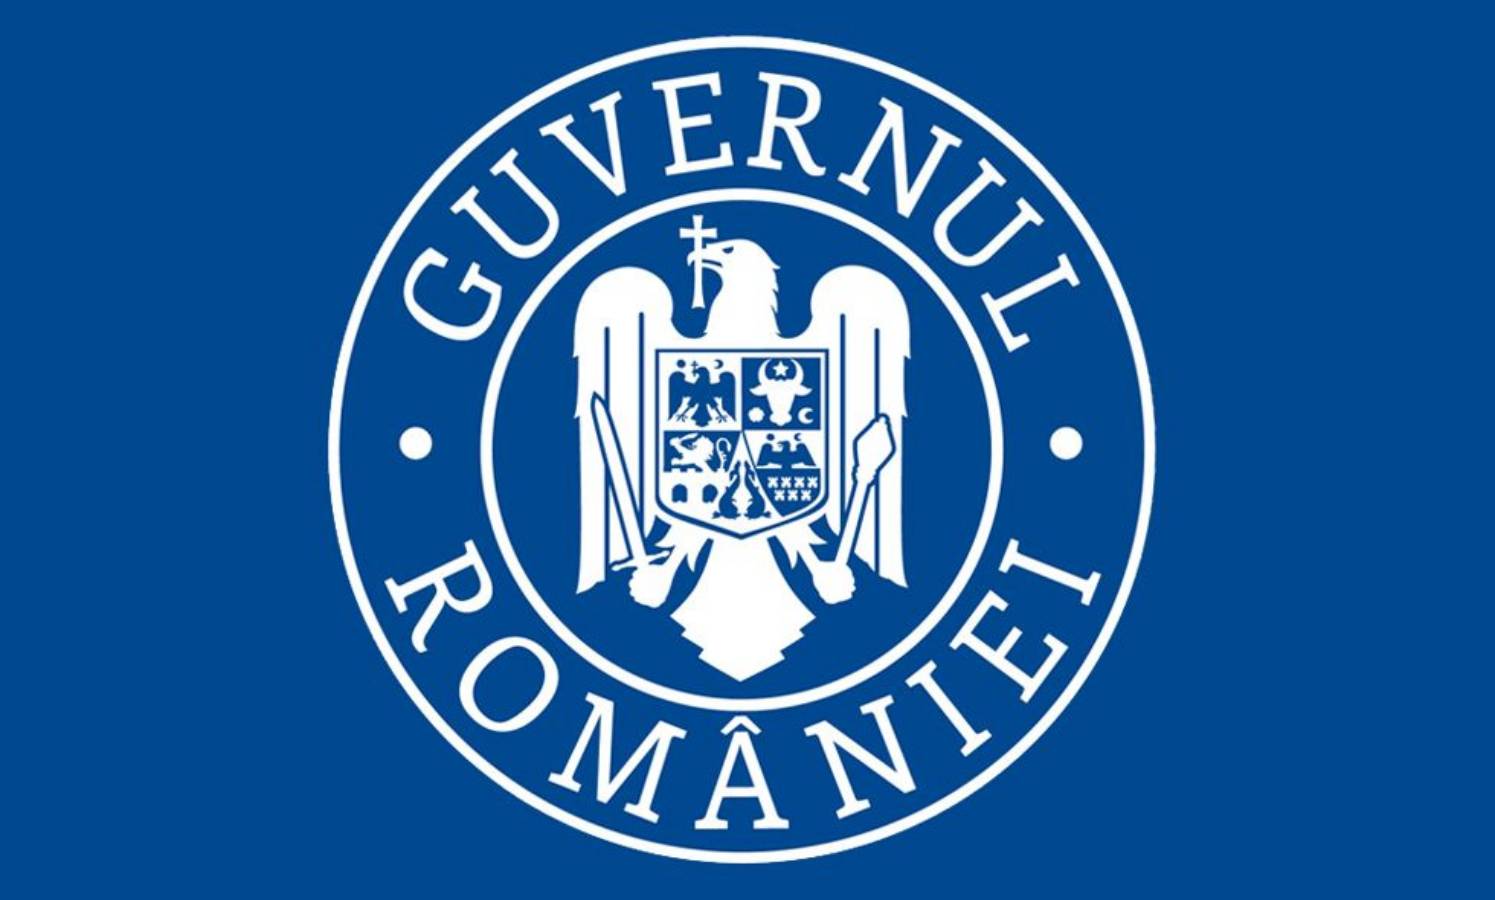 De Roemeense regering heeft de plaats in quarantaine geplaatst